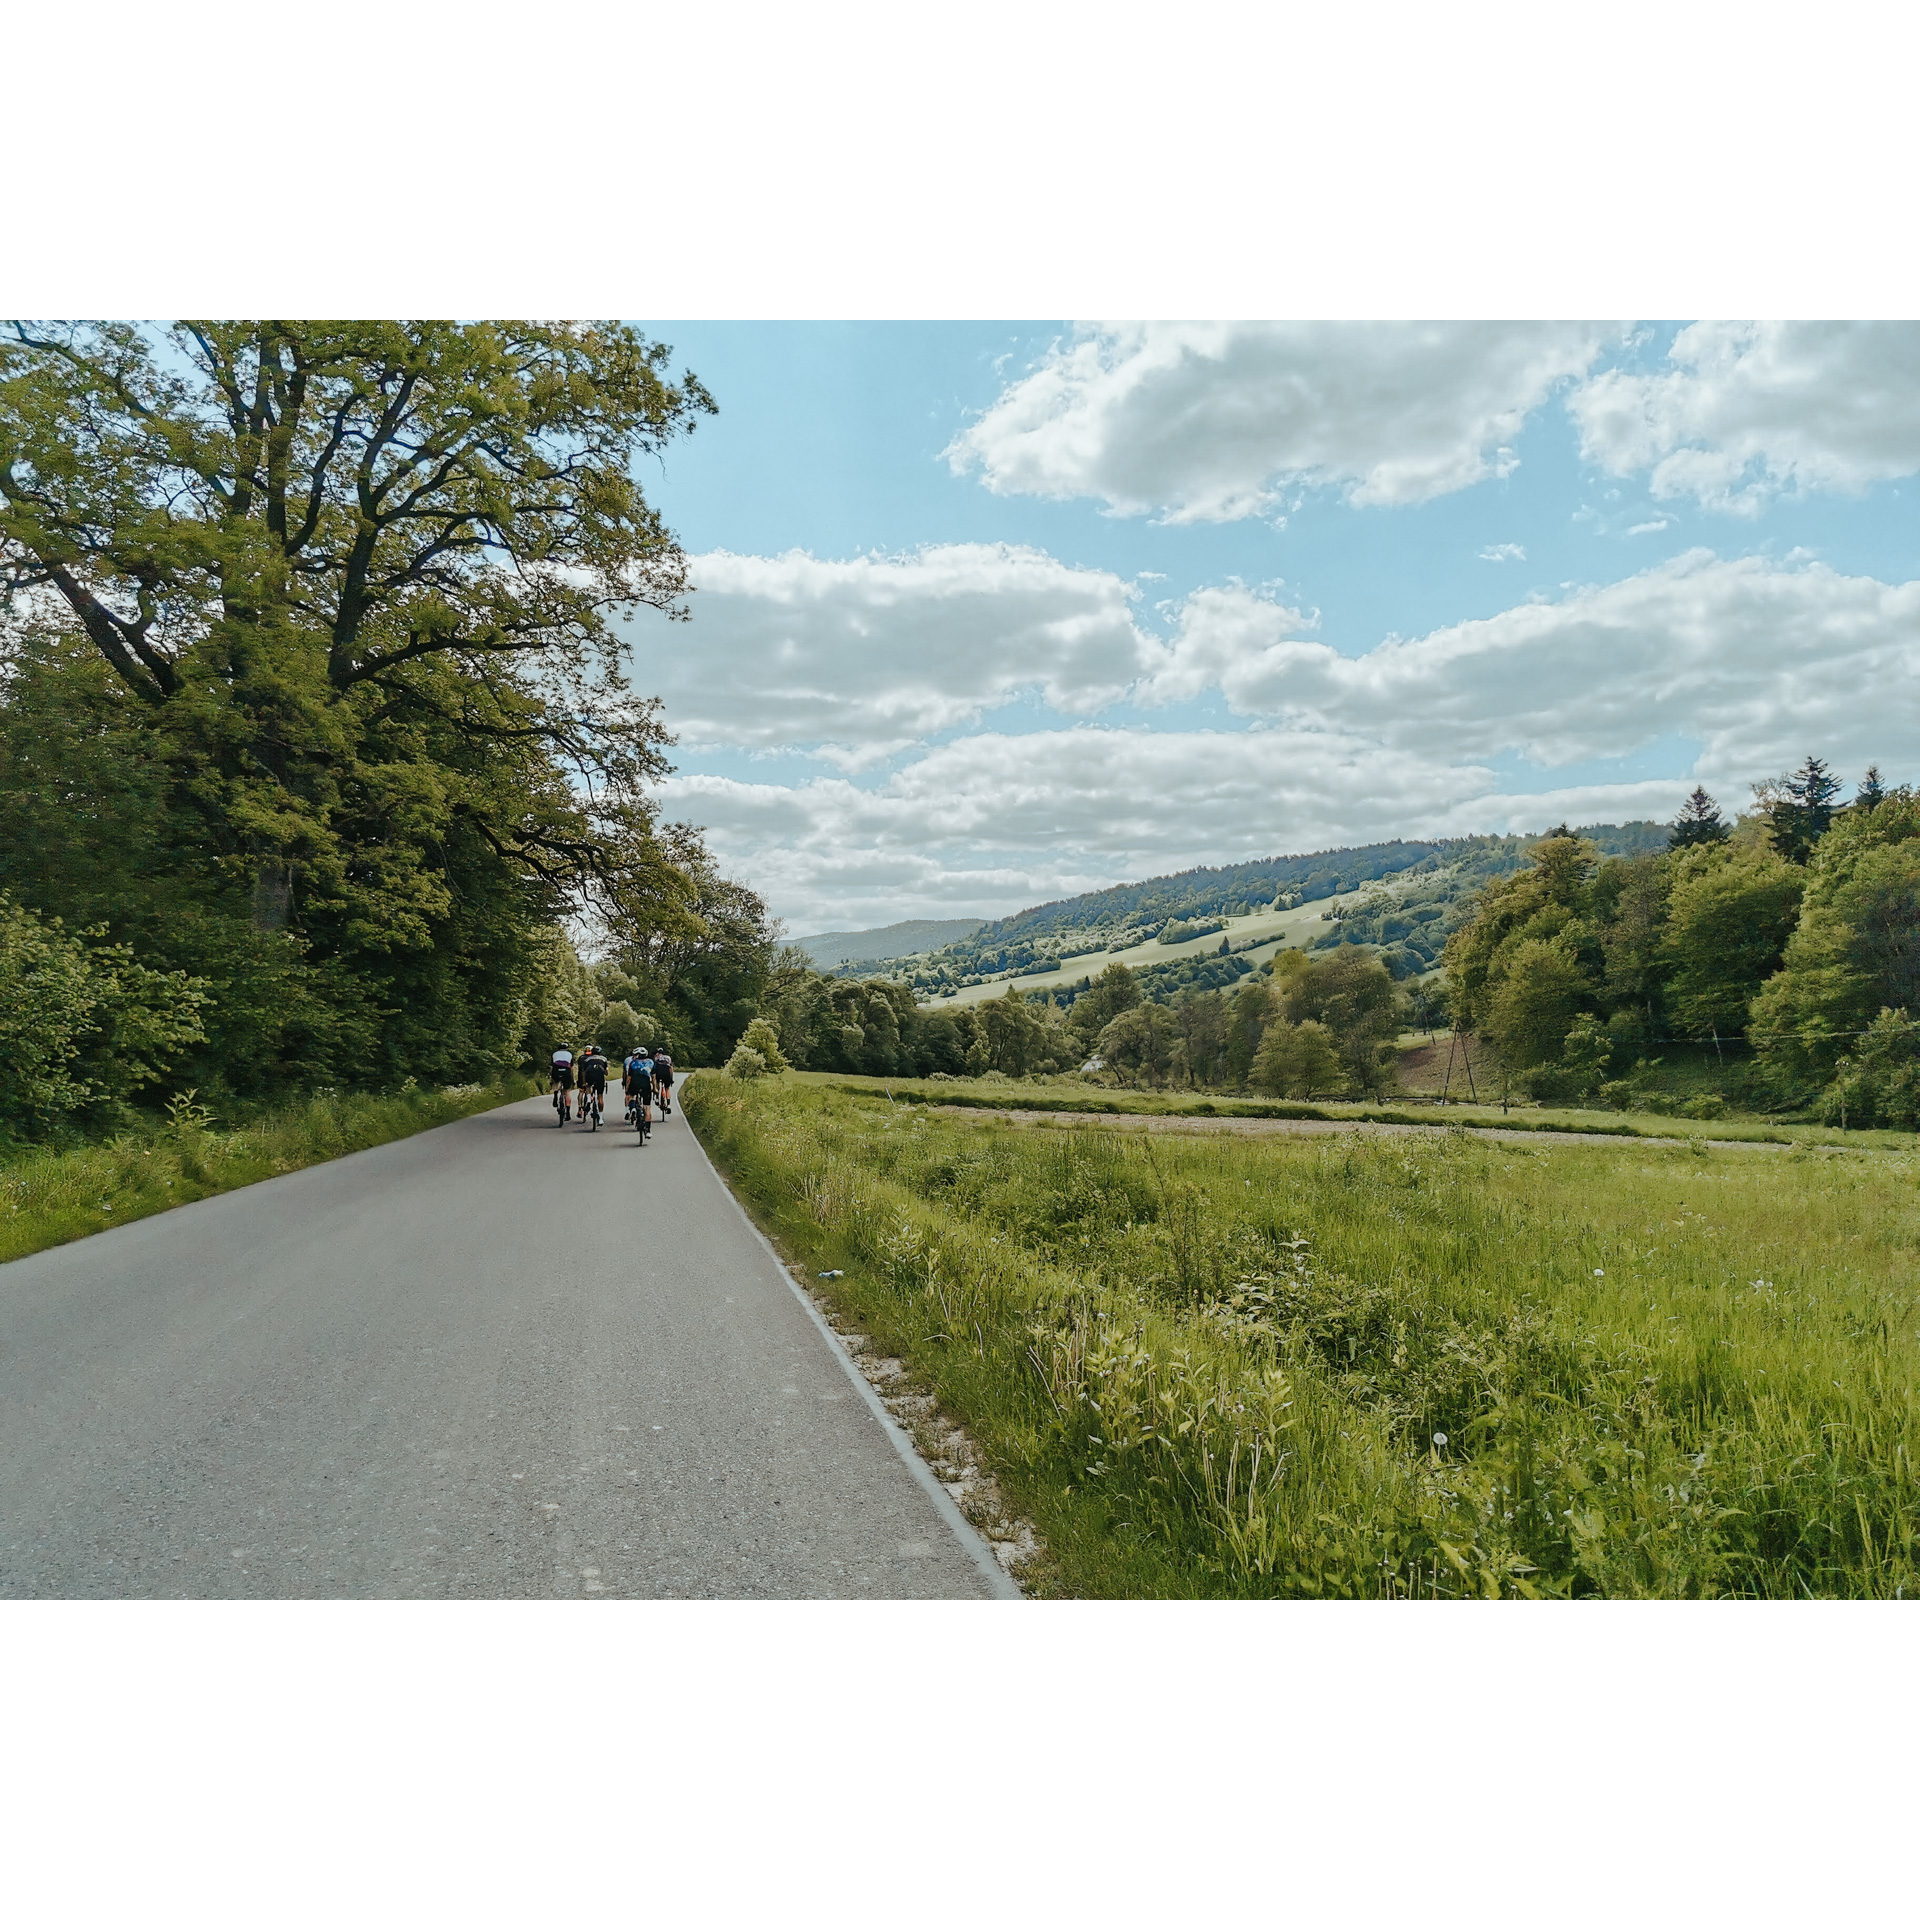 Grupa rowerzystów jadąca drogą asfaltową mijająca drzewa i gęsto porośnięte trawą łąki na tle zalesionych wzgórz